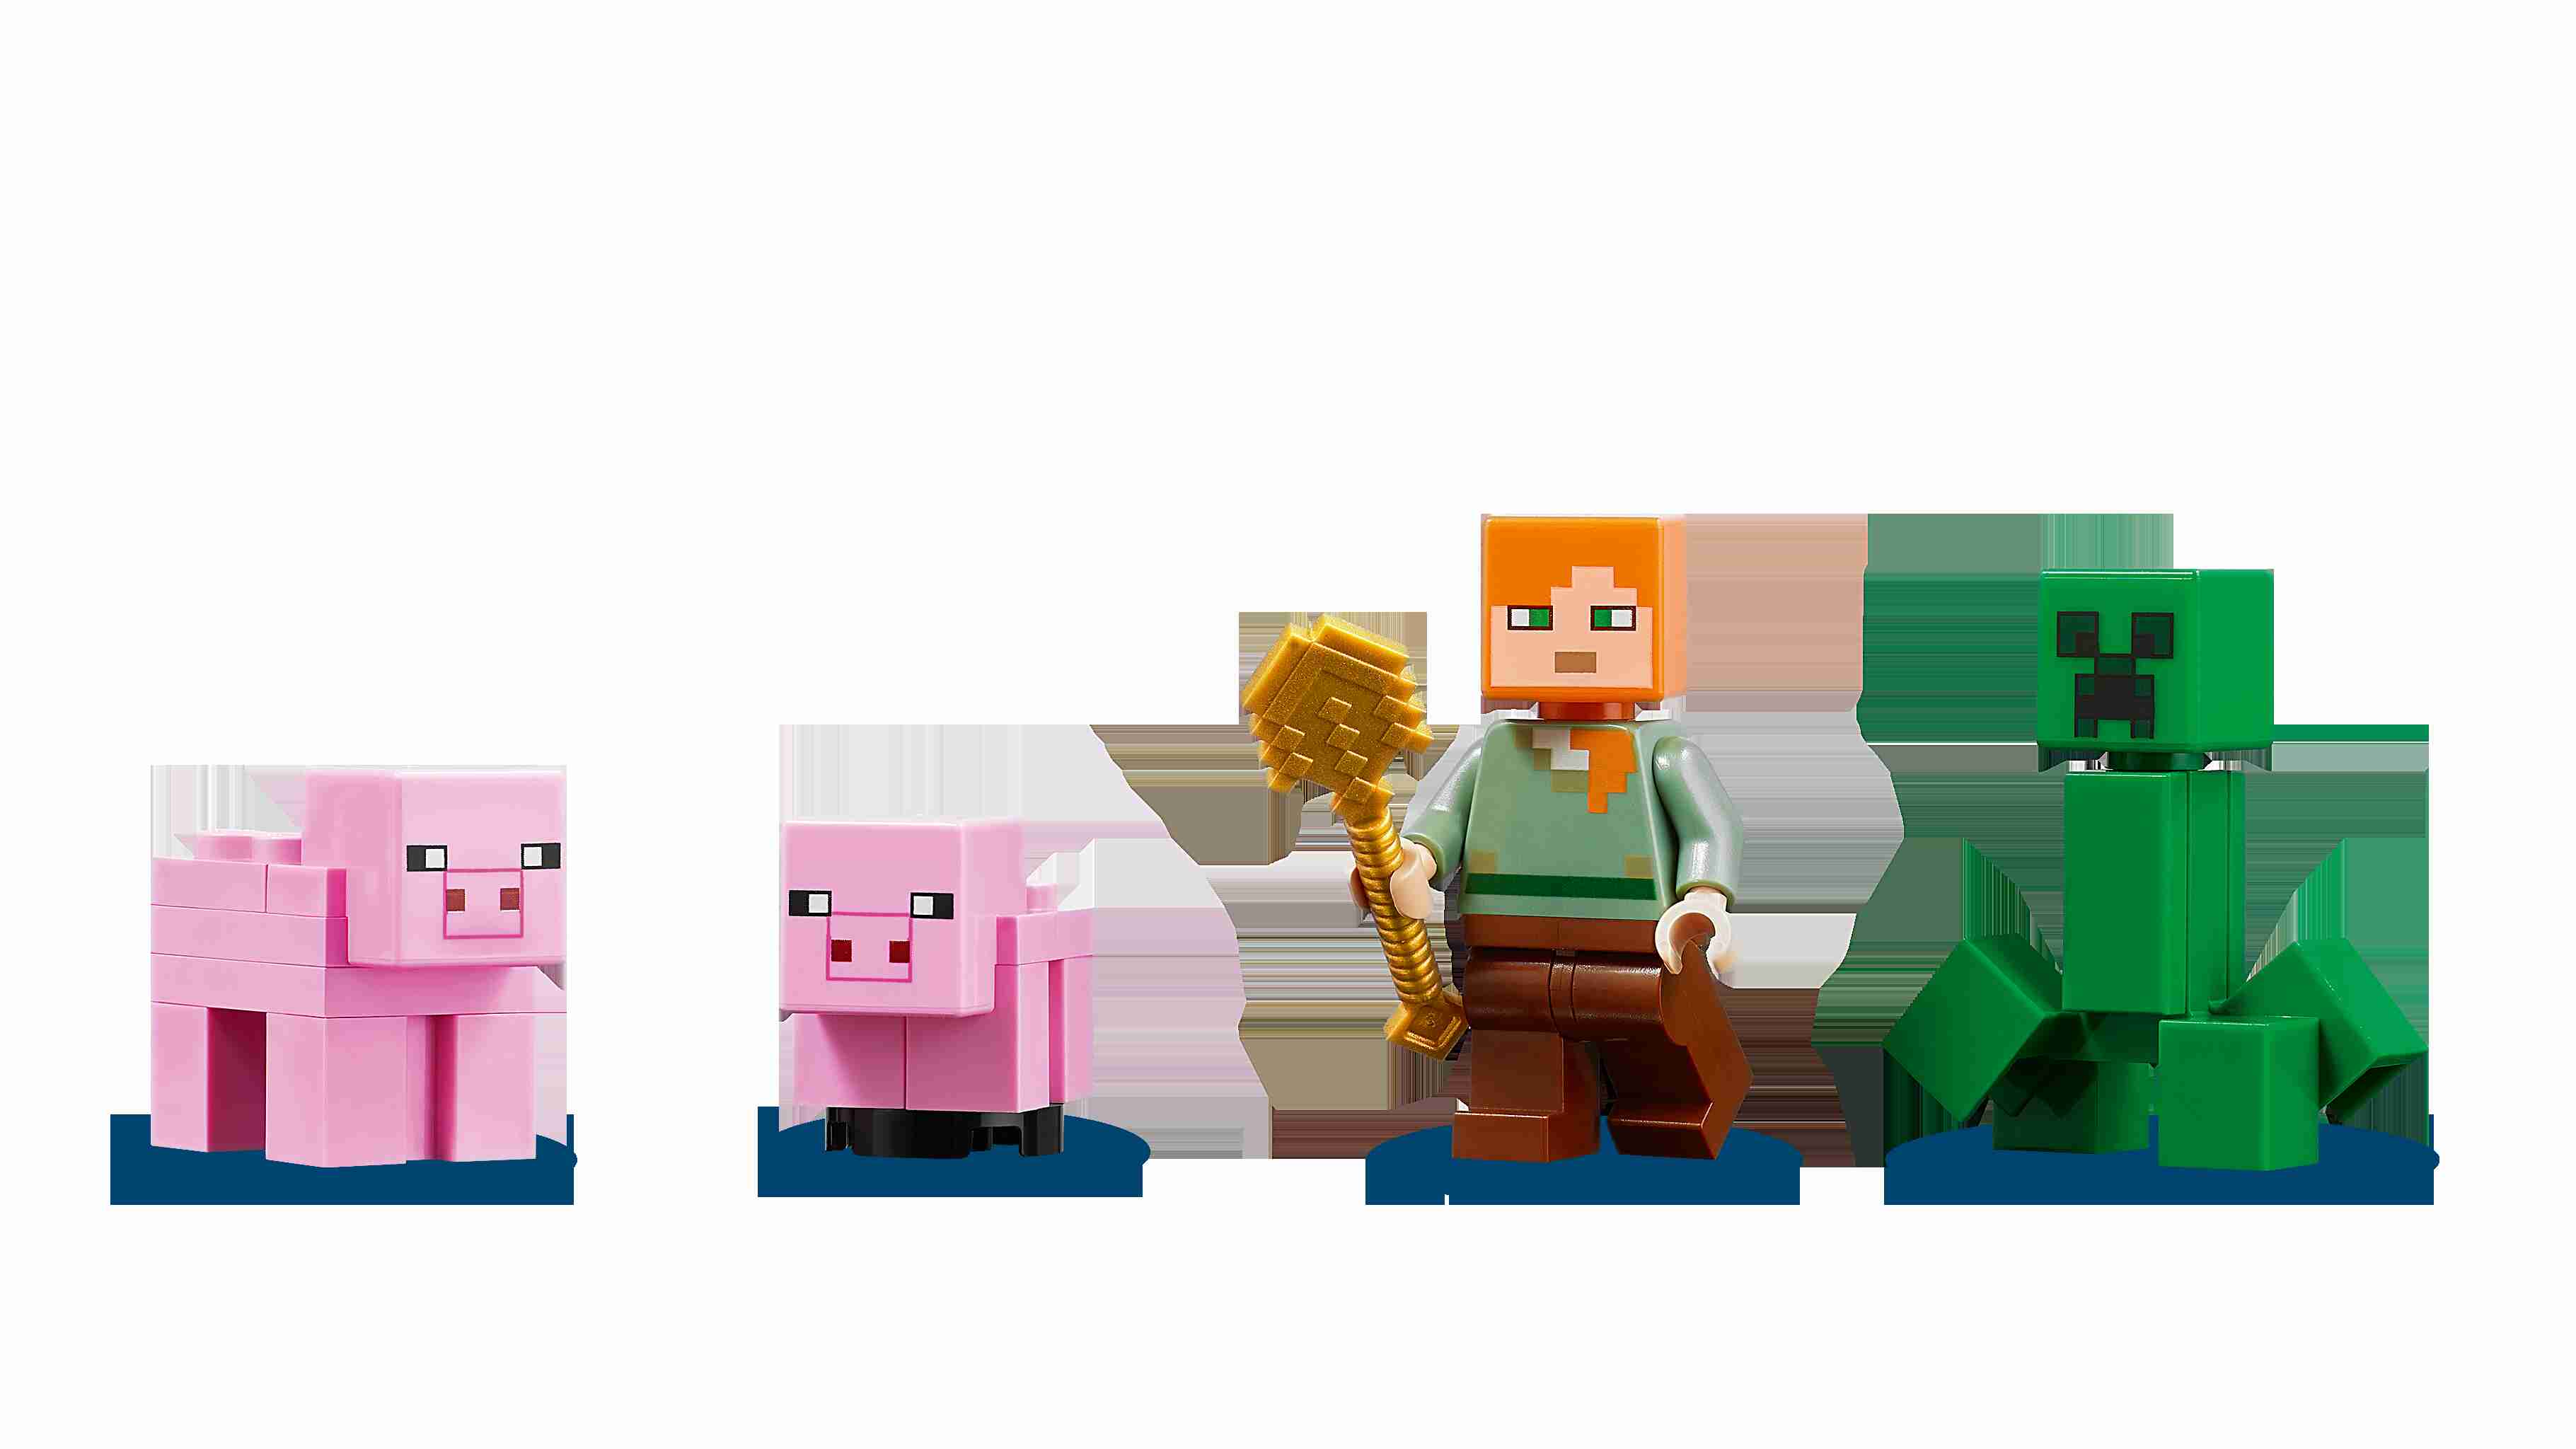 LEGO 21170 Minecraft Das Schweinehaus Bauset mit Figuren: Alex und Creeper